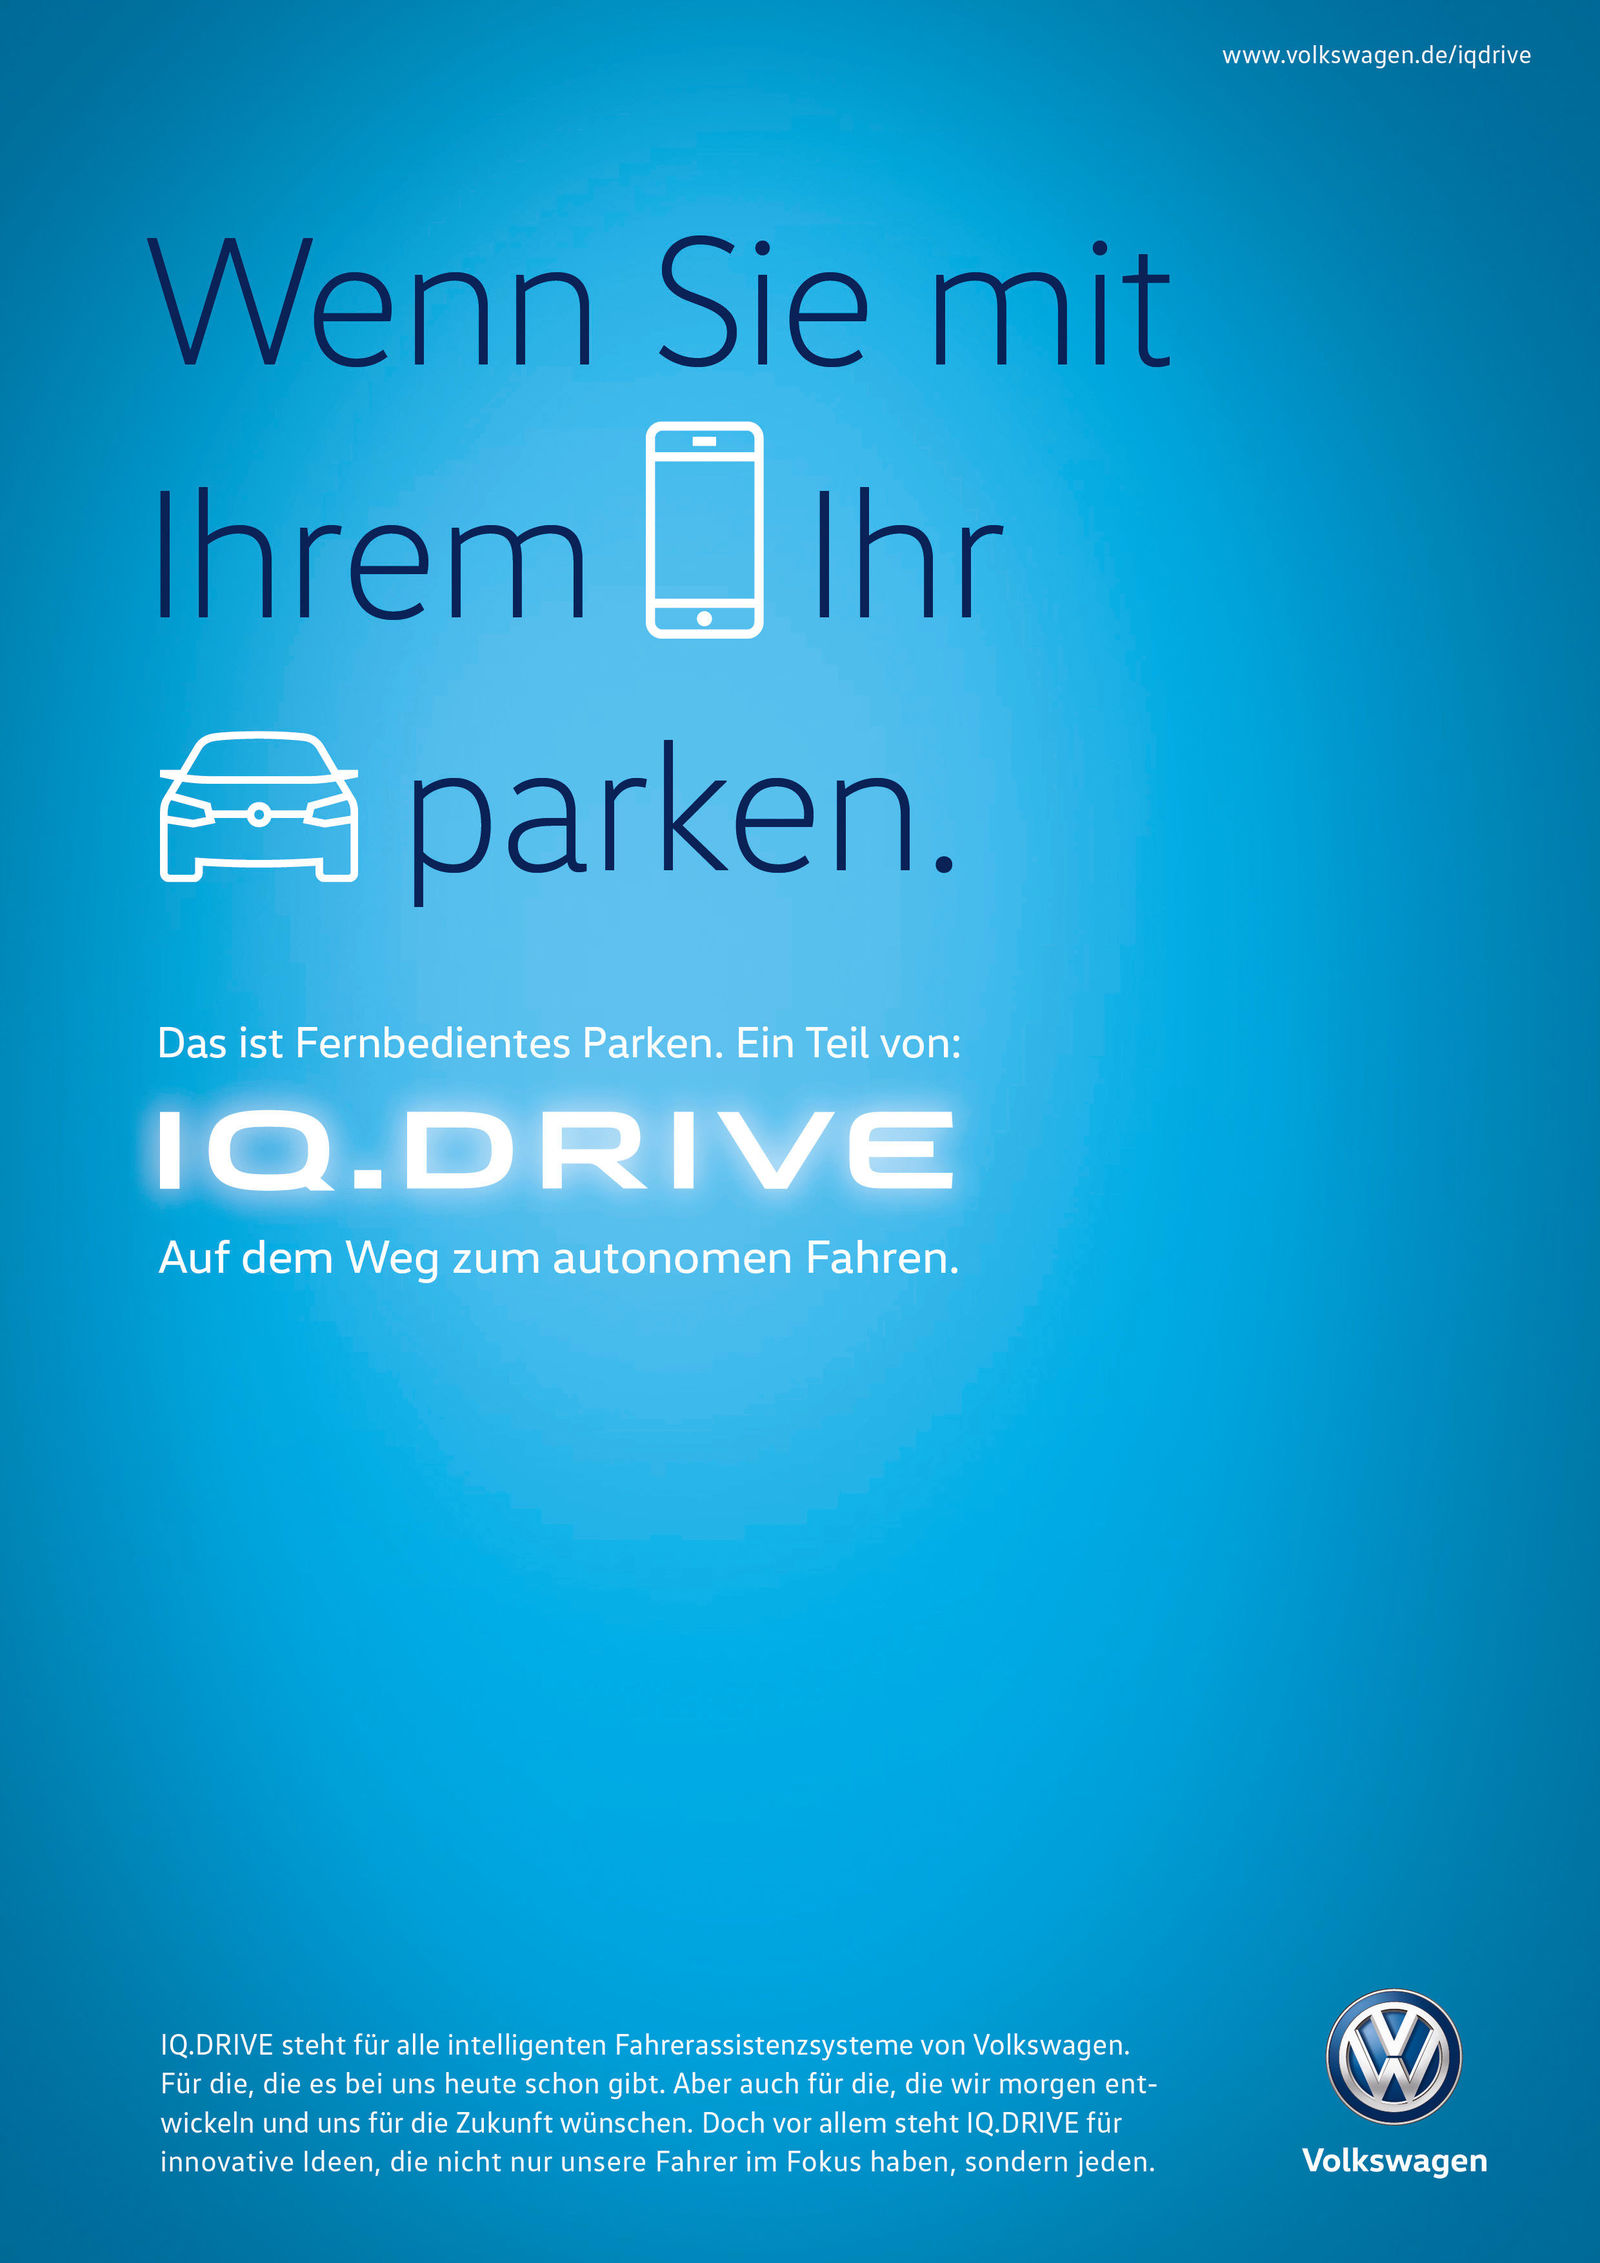 Volkswagen with new IQ.DRIVE umbrella brand campaign